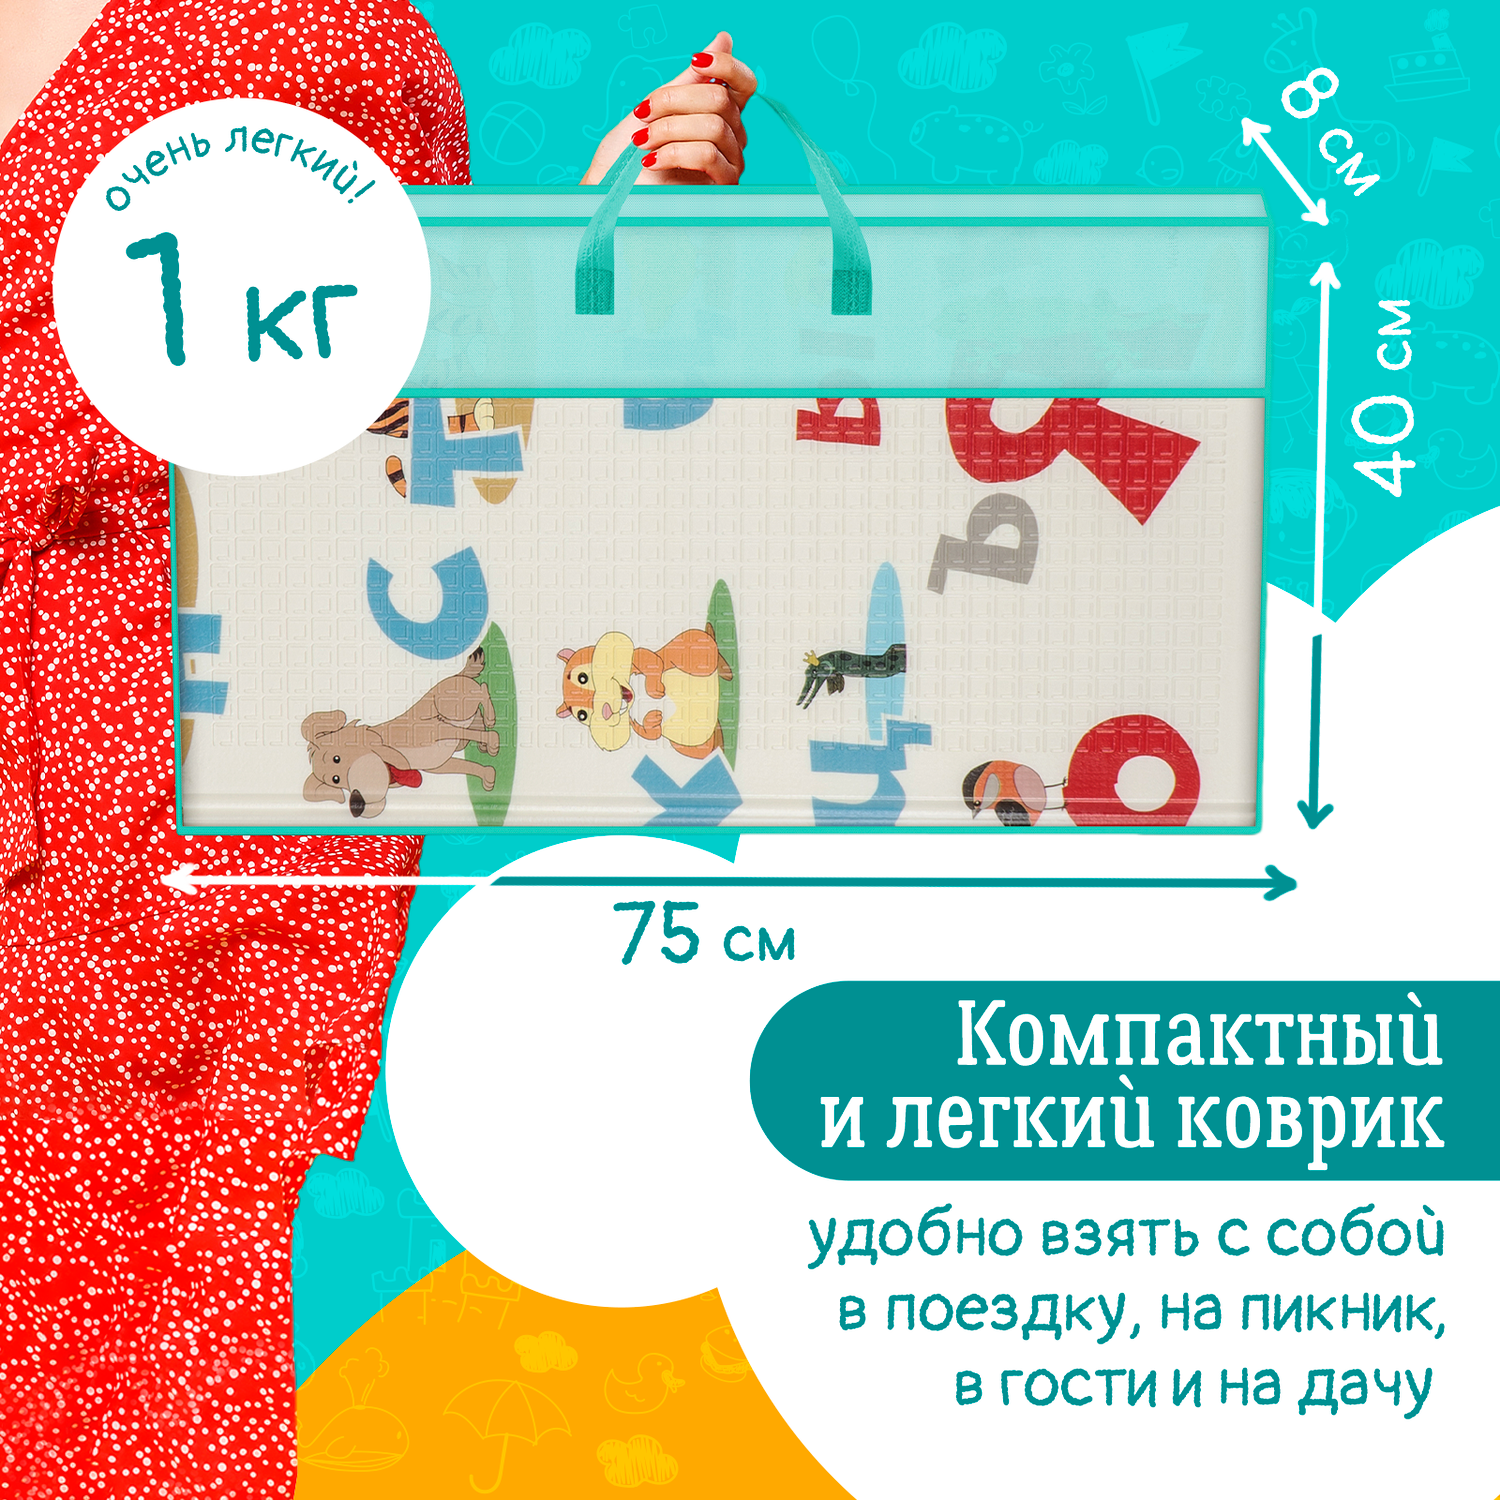 Детский коврик WellMat для ползания 150x200 Premium Русский алфавит/Городок складной развивающий - фото 4